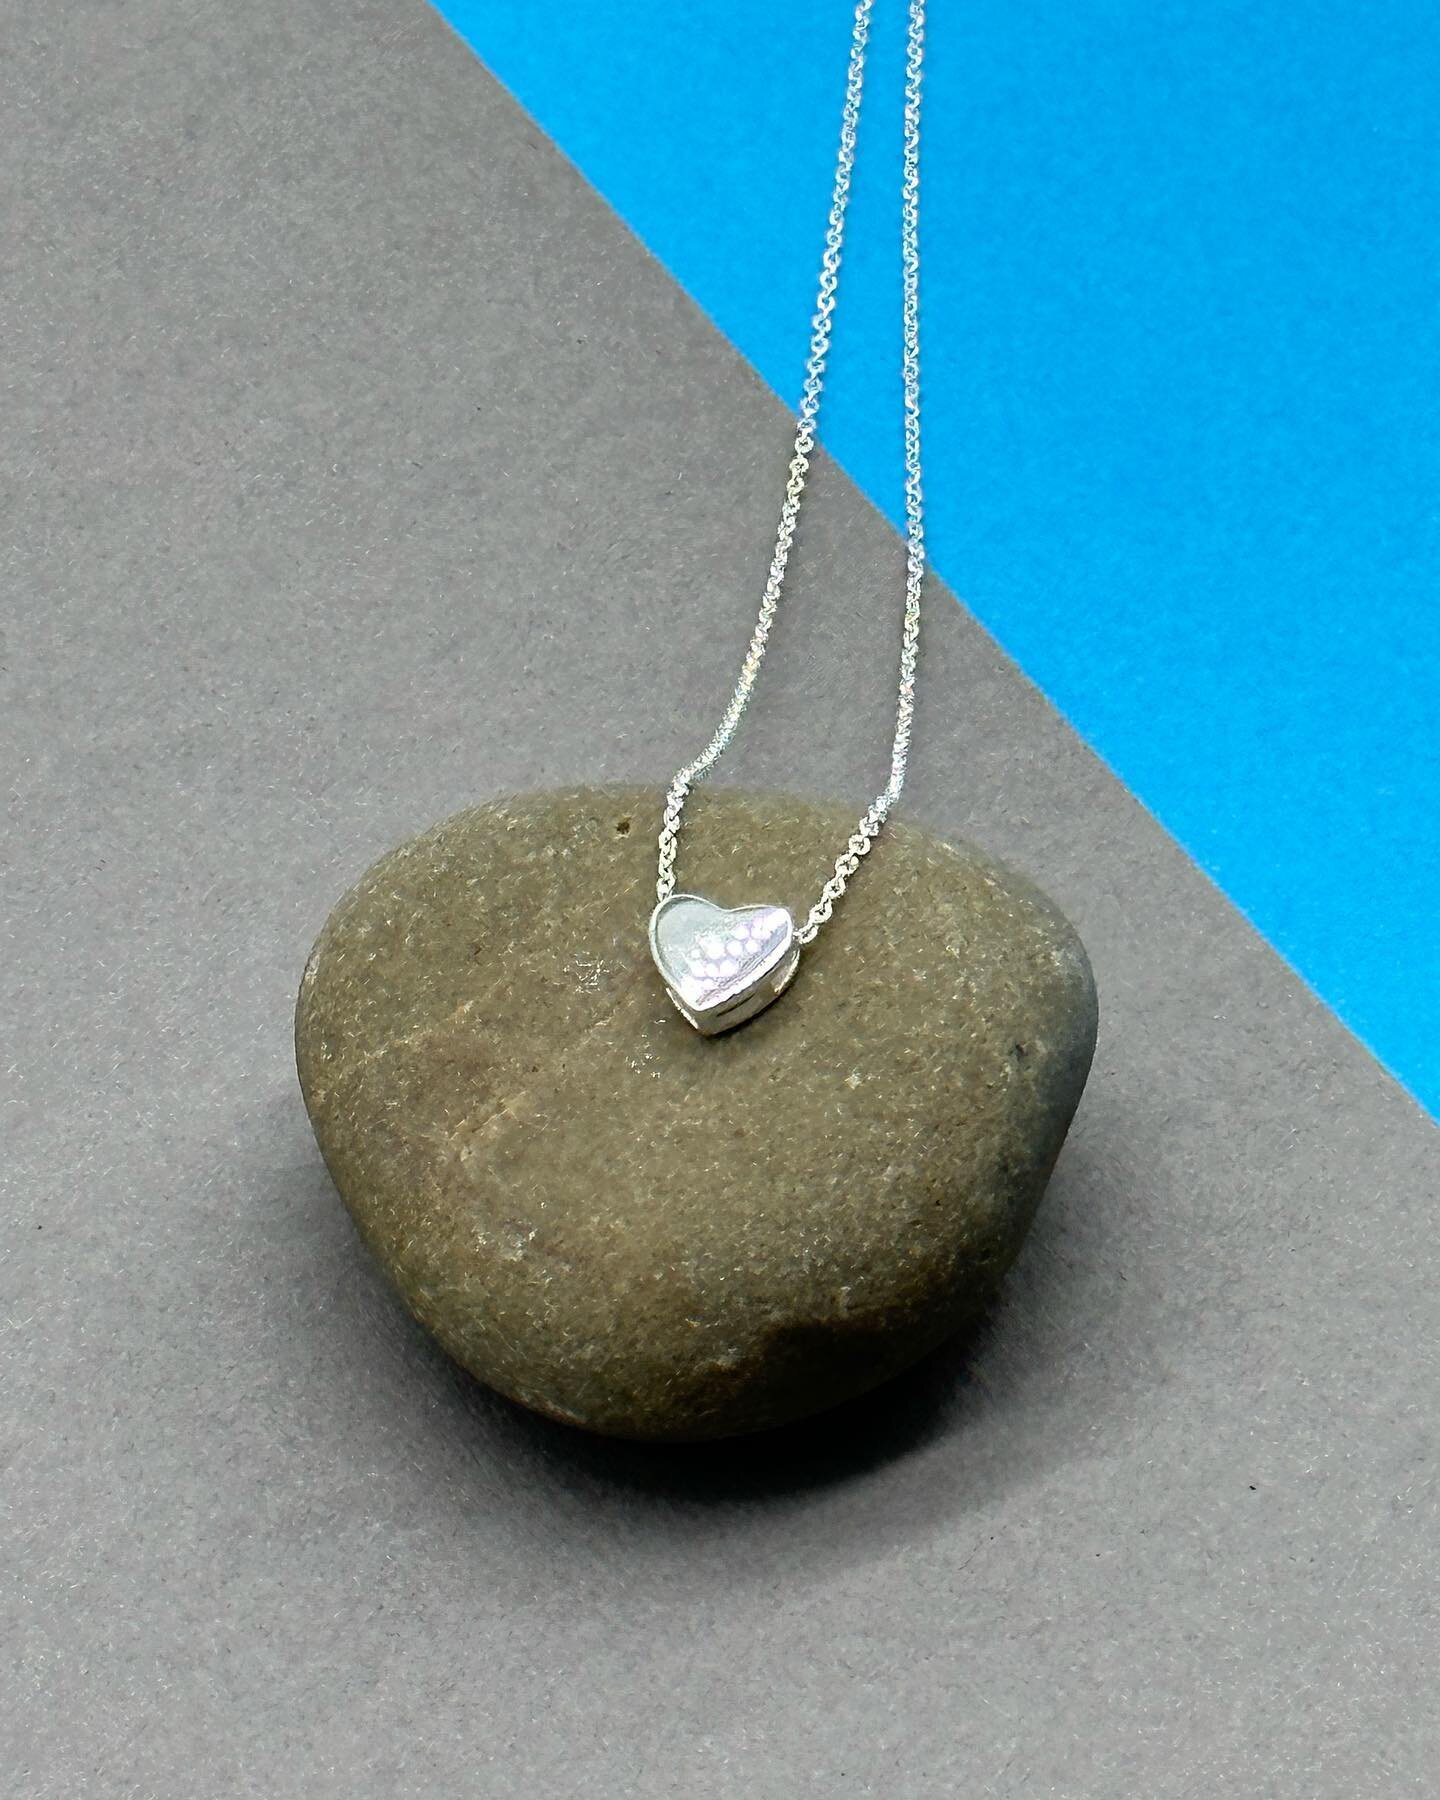 Pretty sterling silver heart pendant ❤️ #tingtingjewellery #heart #pendant #sterlingsilver #giftideas #shoplocal